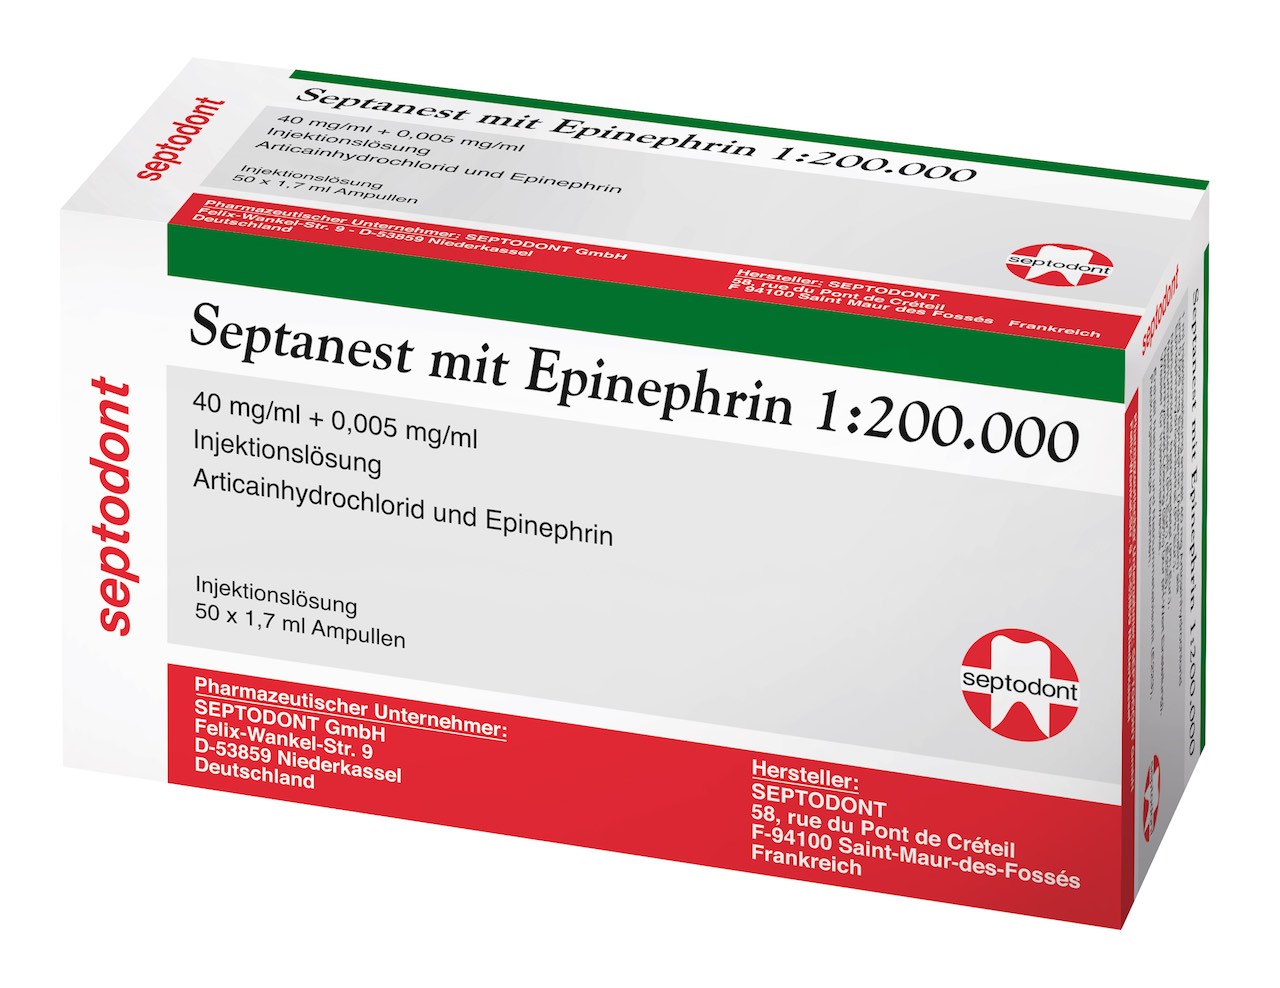 Septanest mit Epinephrin 1:200.000 heißt jetzt "Septanest mit Adrenalin 1:200.000 - 40 mg/ml + 0,005 mg/ml Injektionslösung" 